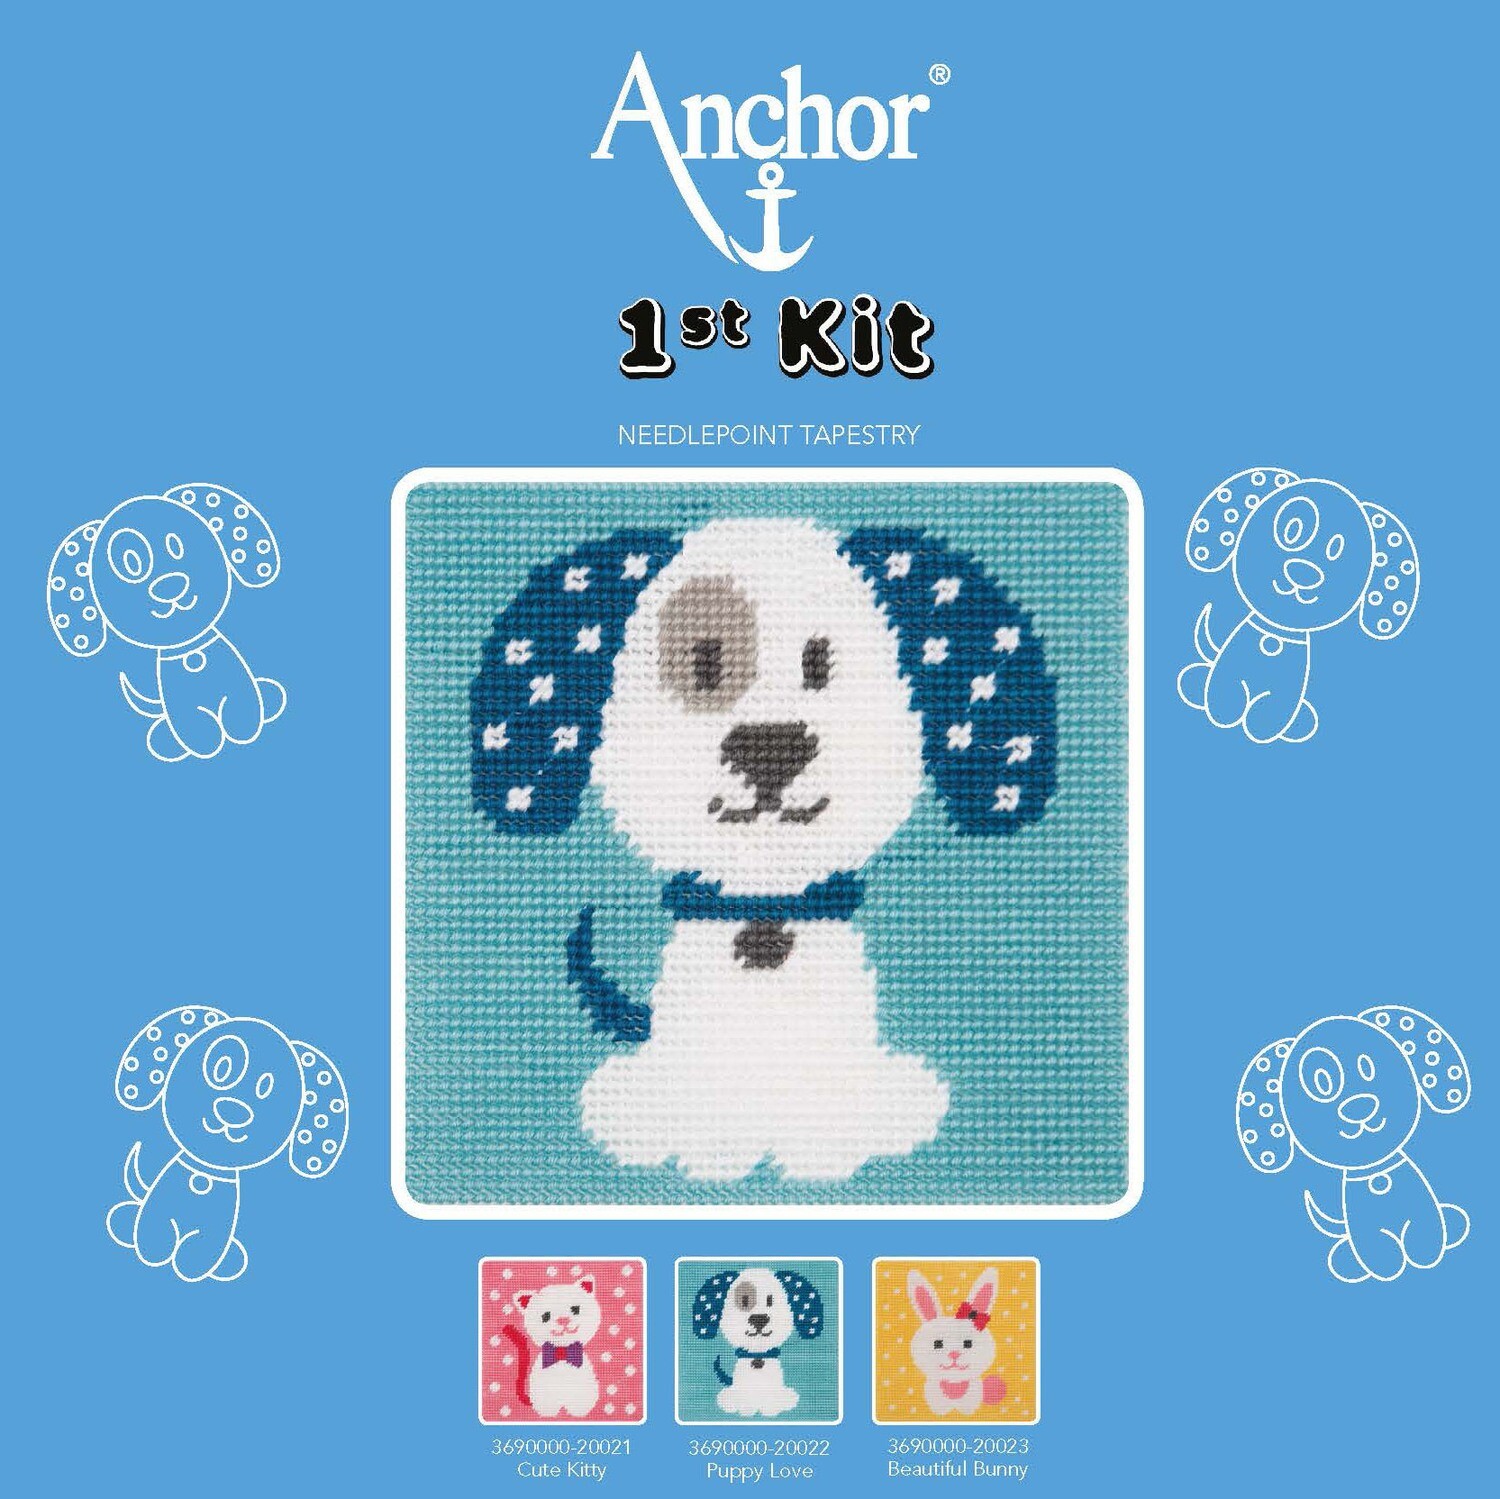 Anchor '1st Kit' gobelin hímzőkészlet gyerekeknek. Puppy Love kutya 20022